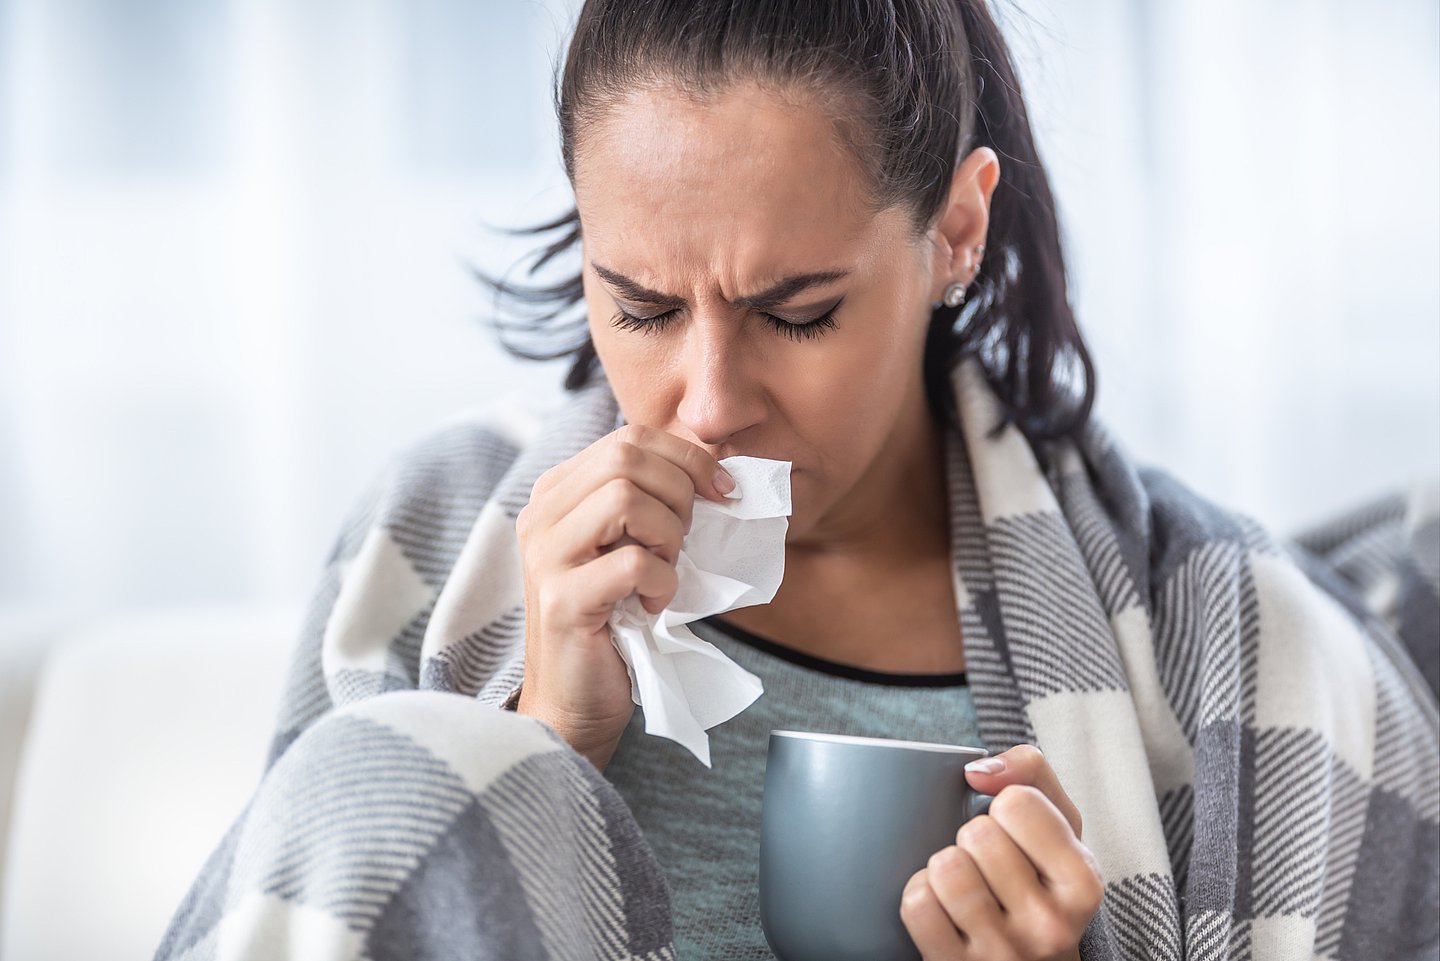 Foto zeigt eine Frau mit Infekt, die sich mit der einen Hand ein Papiertaschentuch vor die Nase hält, in der anderen hält sie eine Tasse und um die Schultern liegt eine warme Decke.